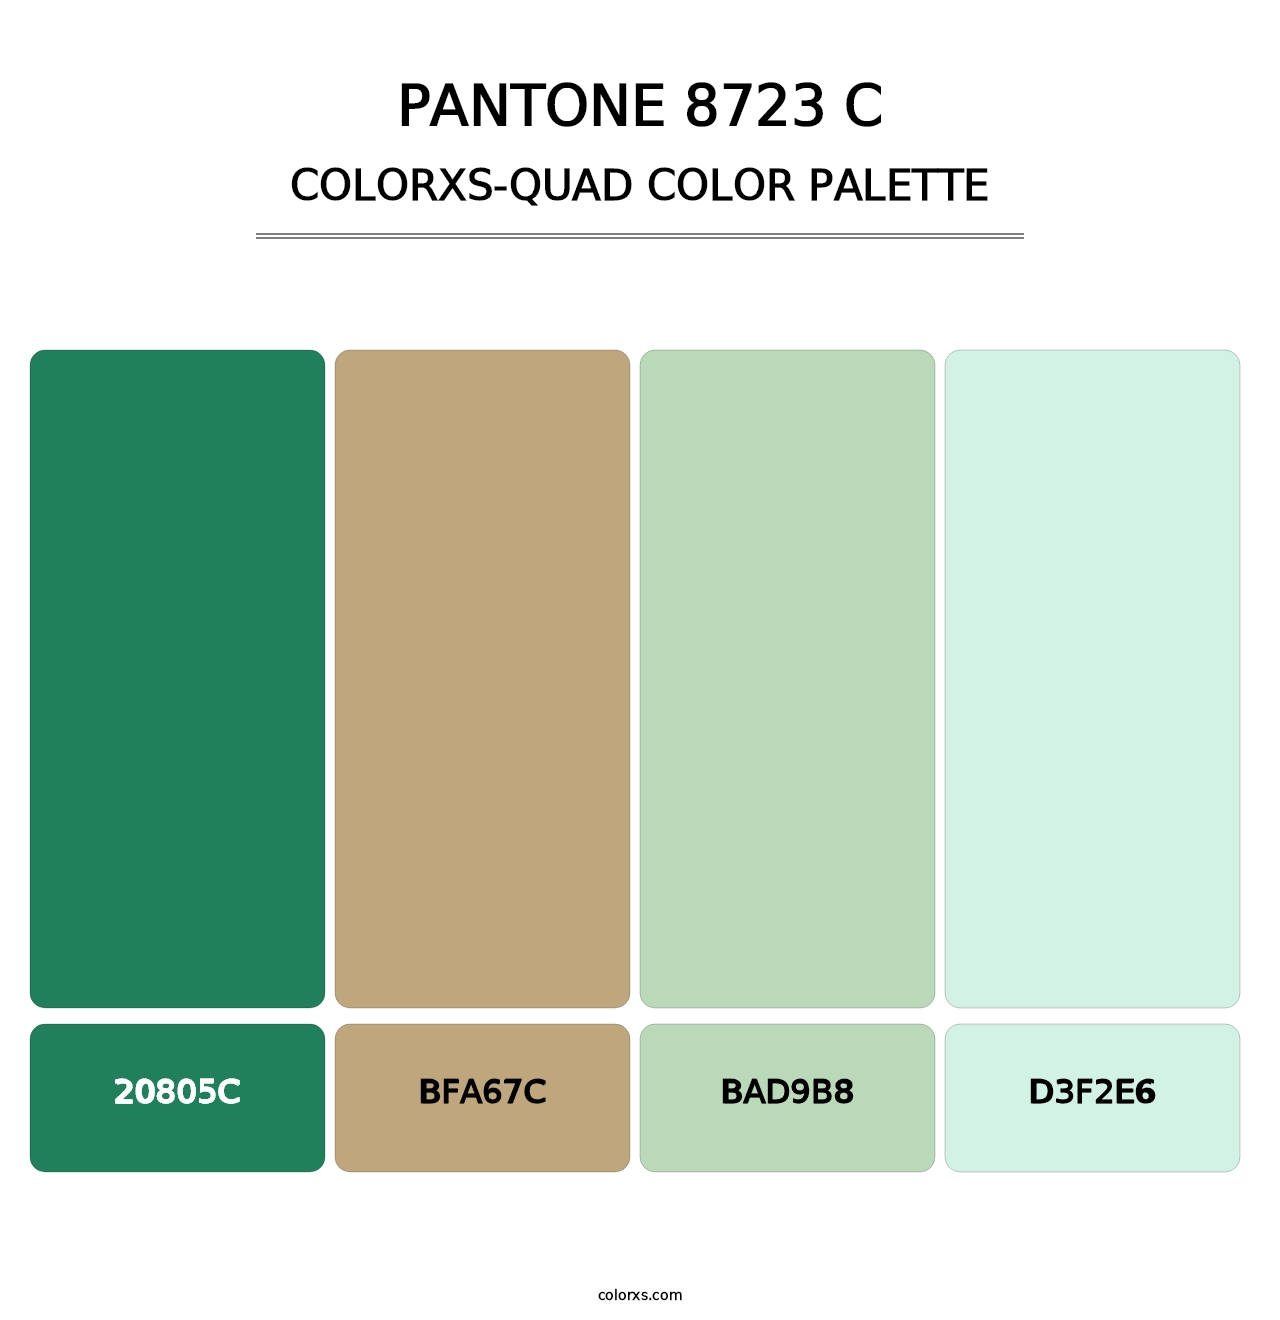 PANTONE 8723 C - Colorxs Quad Palette